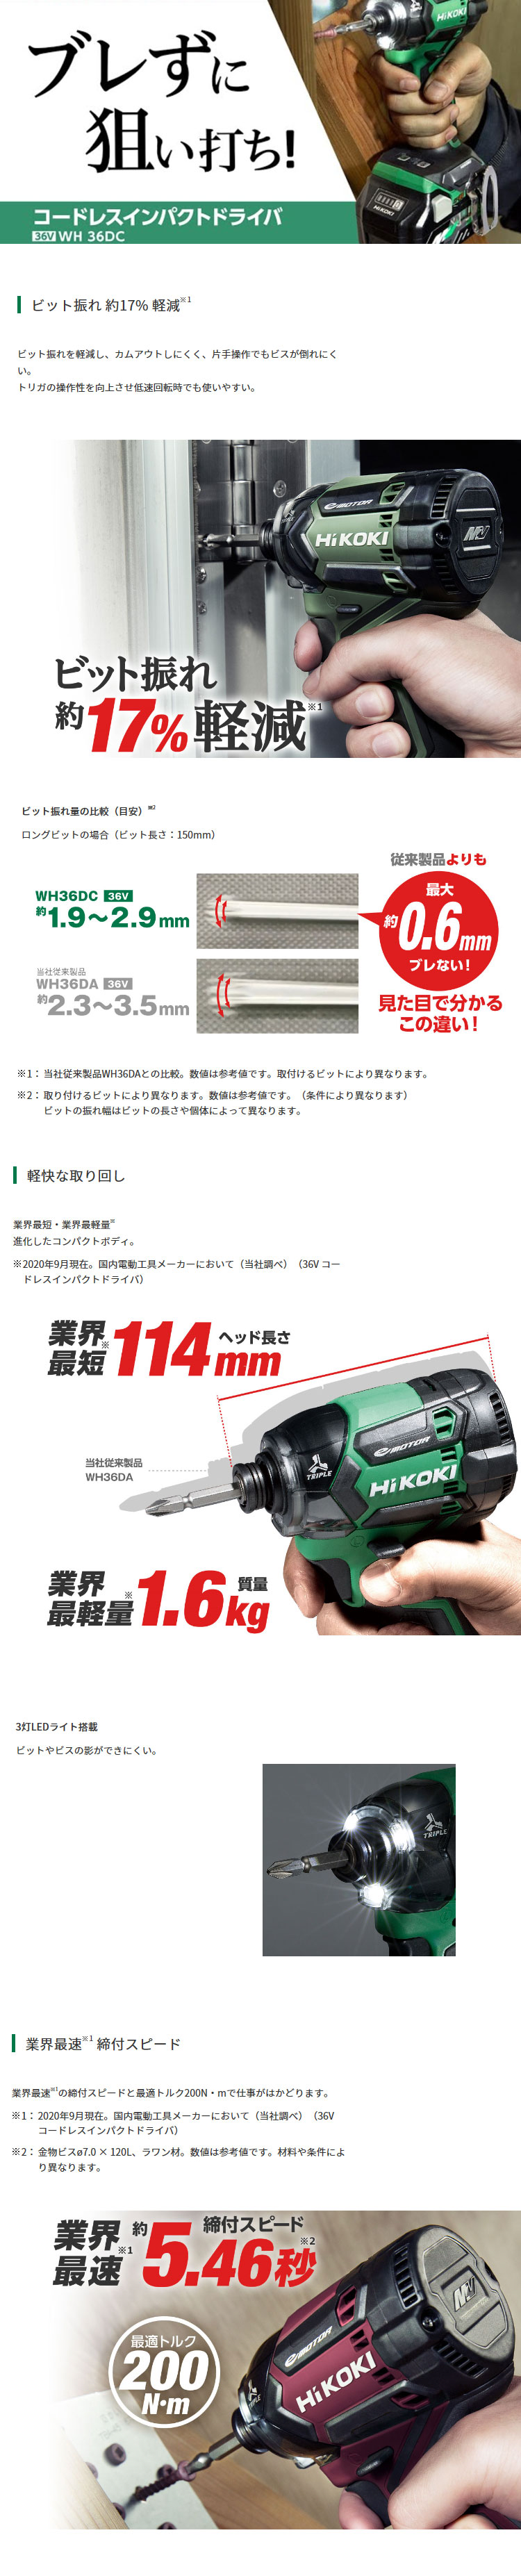 ハイコーキ 36V【2.5Ah電池付】マルチボルトコードレスインパクト ...